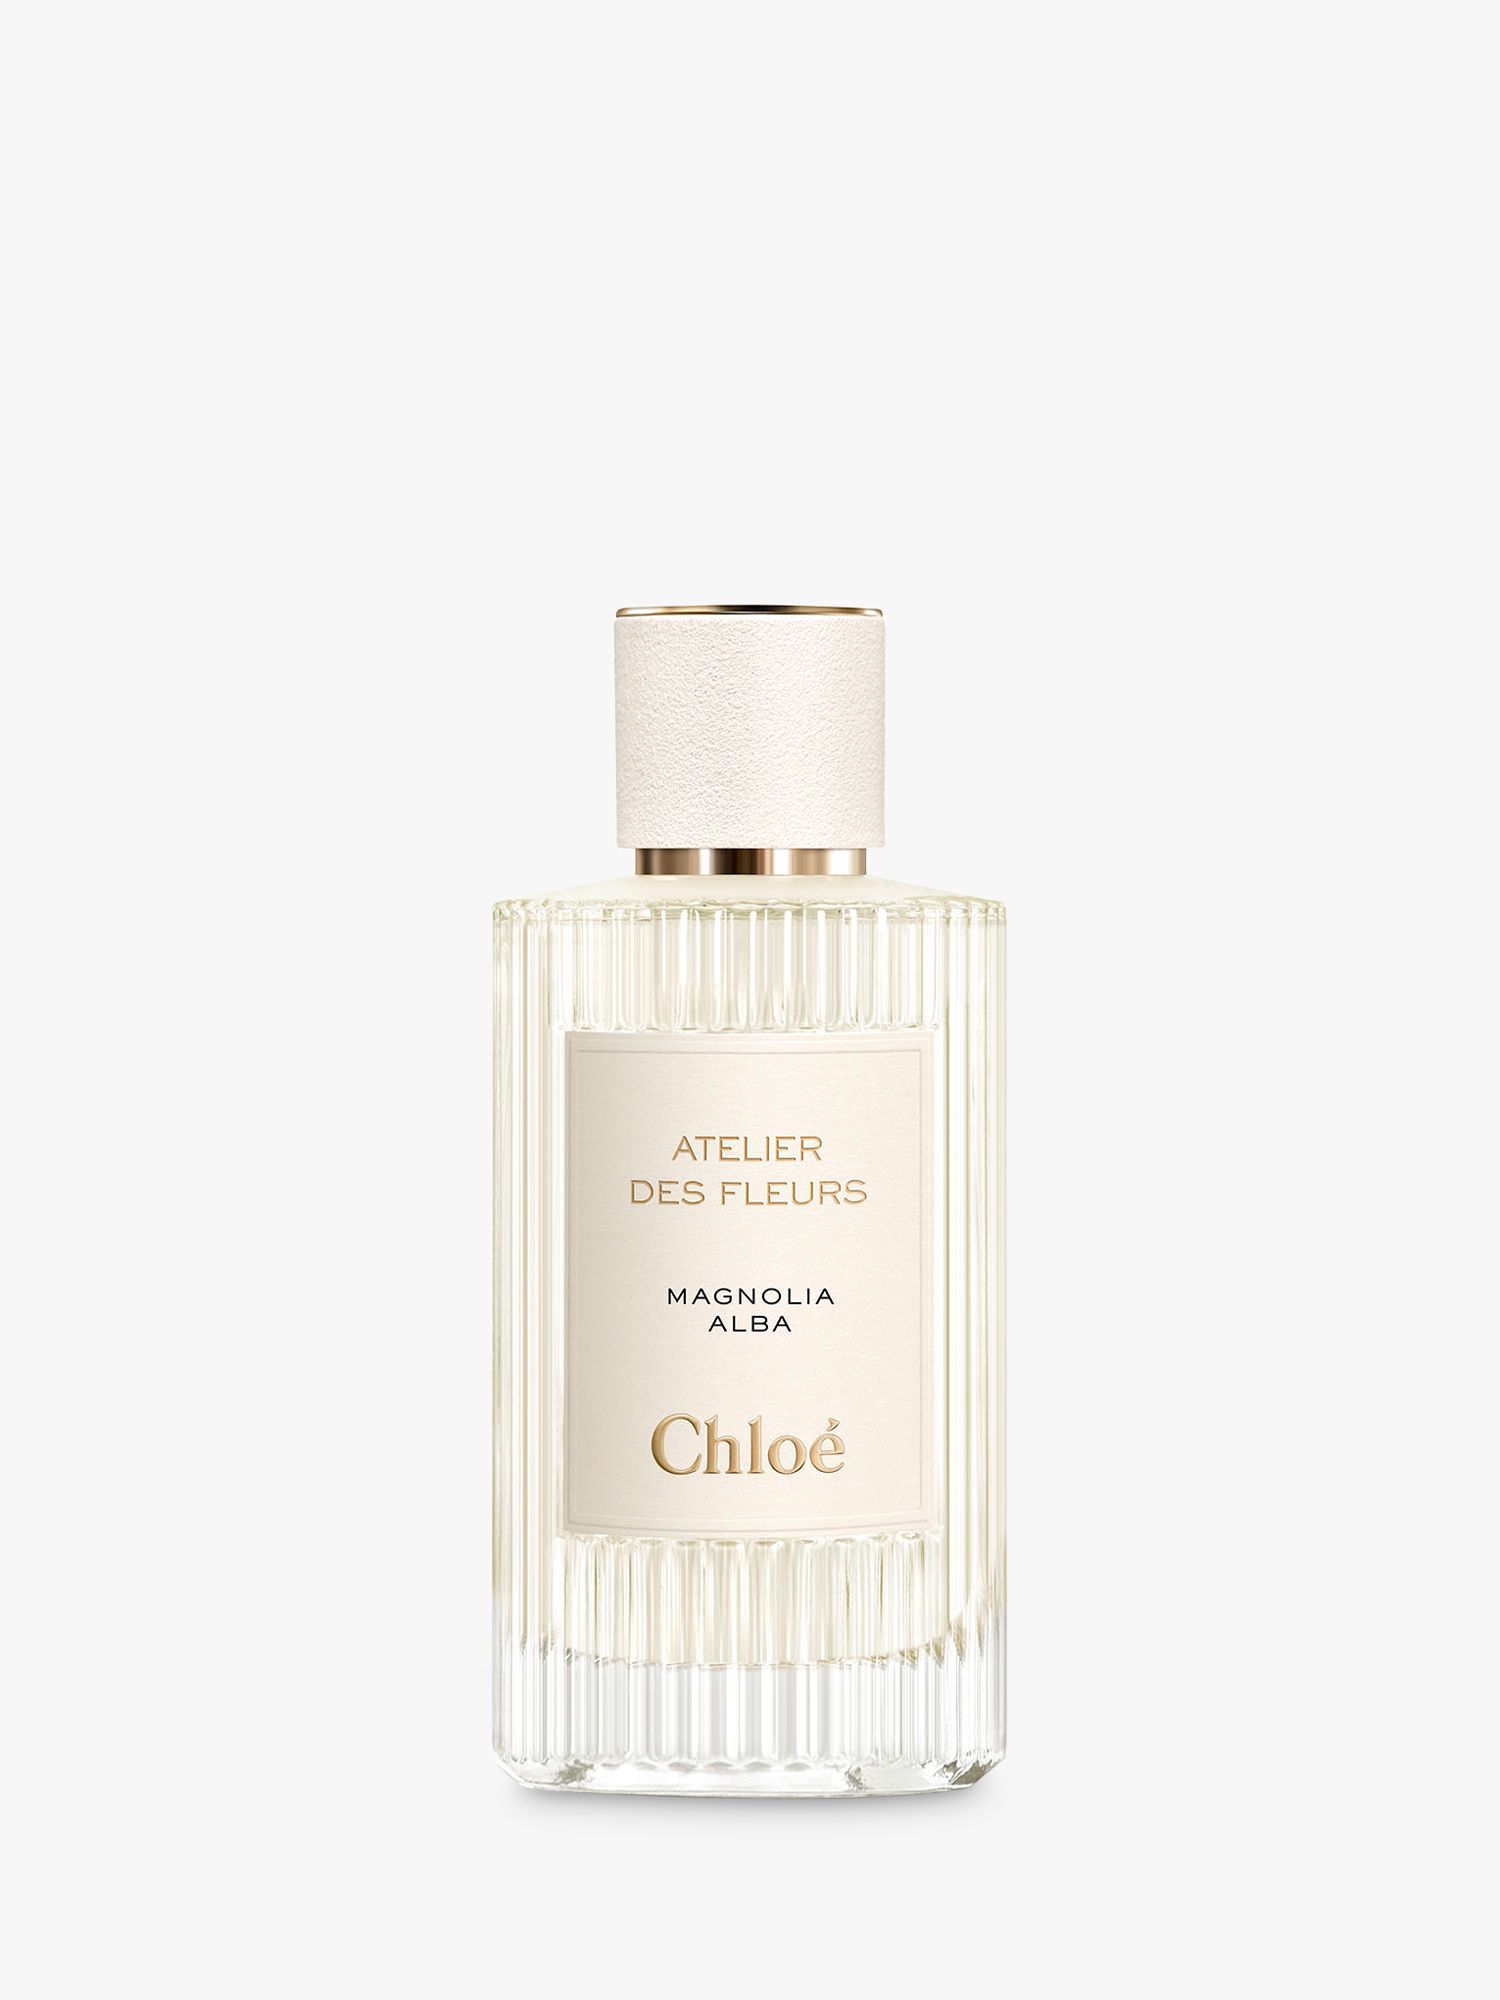 Chloé Atelier des Fleurs Magnolia Alba Eau de Parfum, 150ml 1